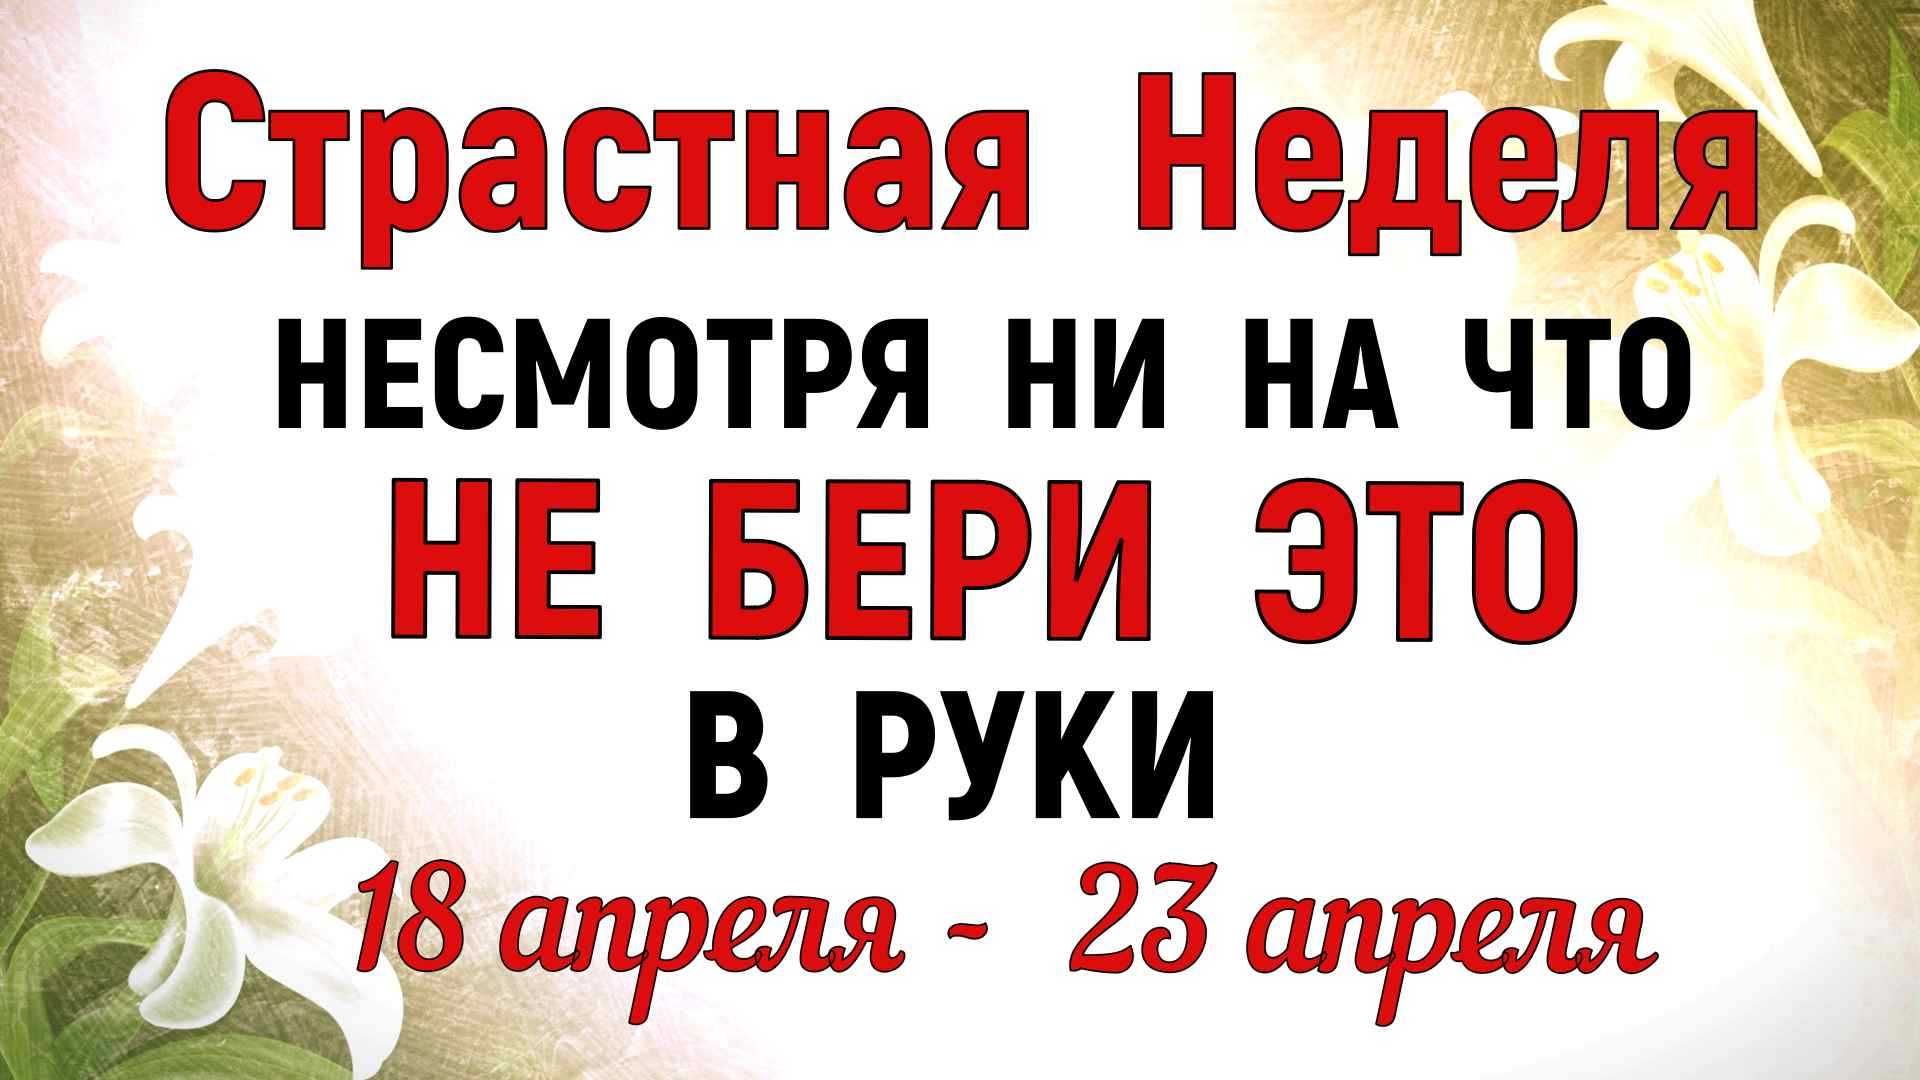 Посты в 2022 году православные: календарь церковный постов и трапез для мирян по месяцам, что можно есть, для свадьбы